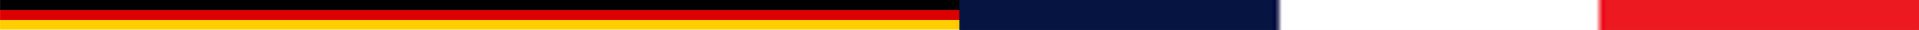 Deutsch-Franzoesische Fahne